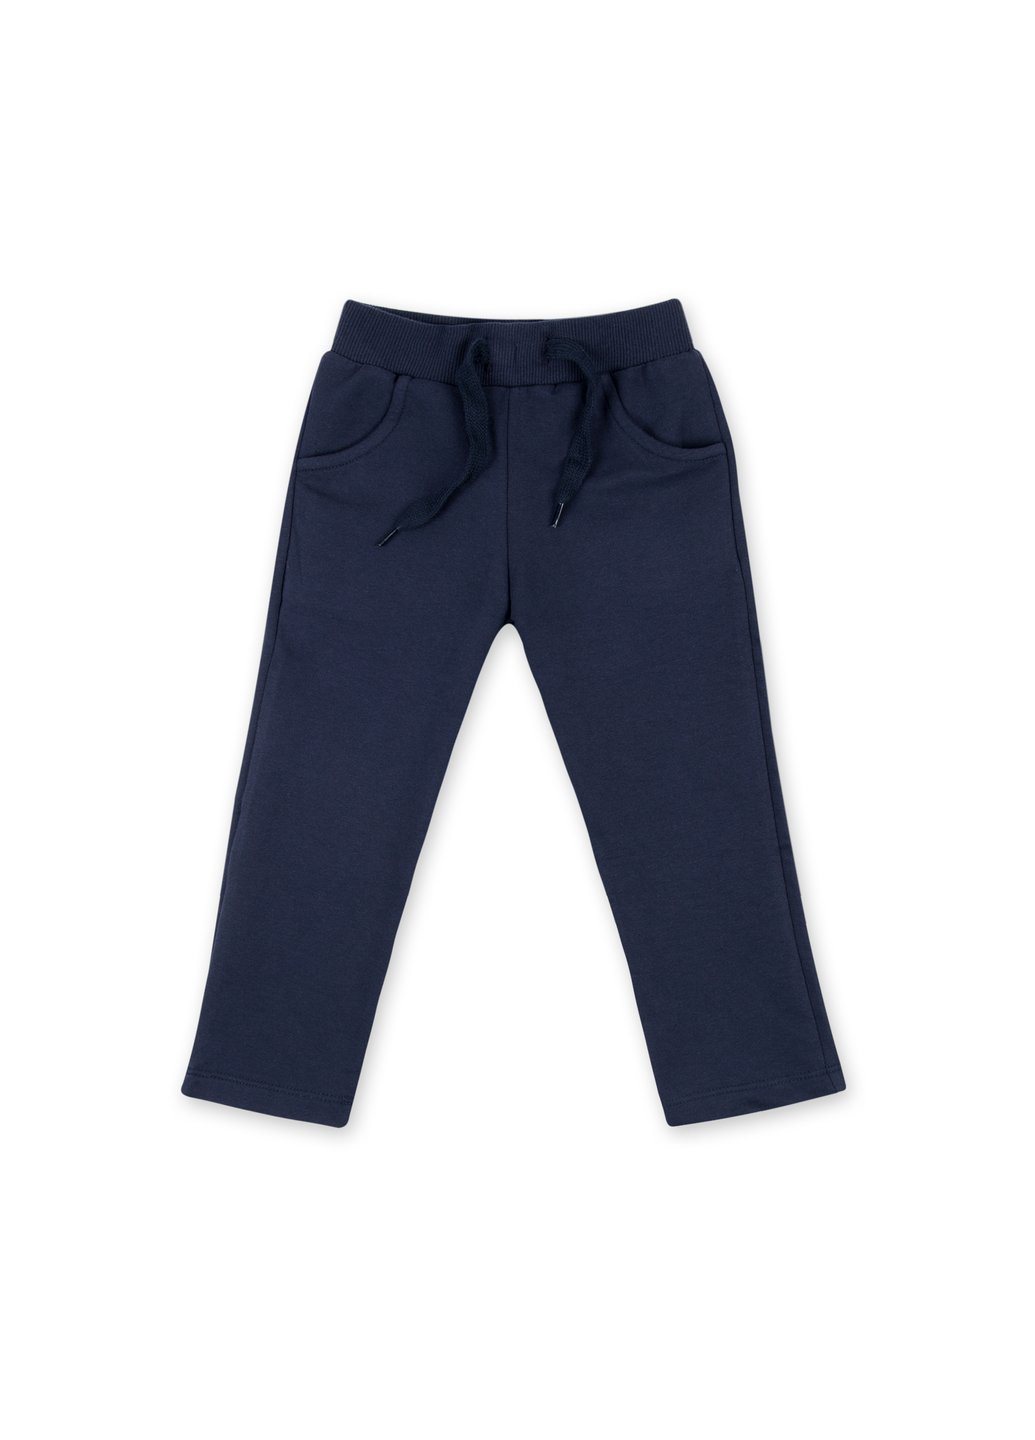 Комбинированный демисезонный набор детской одежды кофта с брюками "little angel" (8261-98g-blue-pink) Breeze